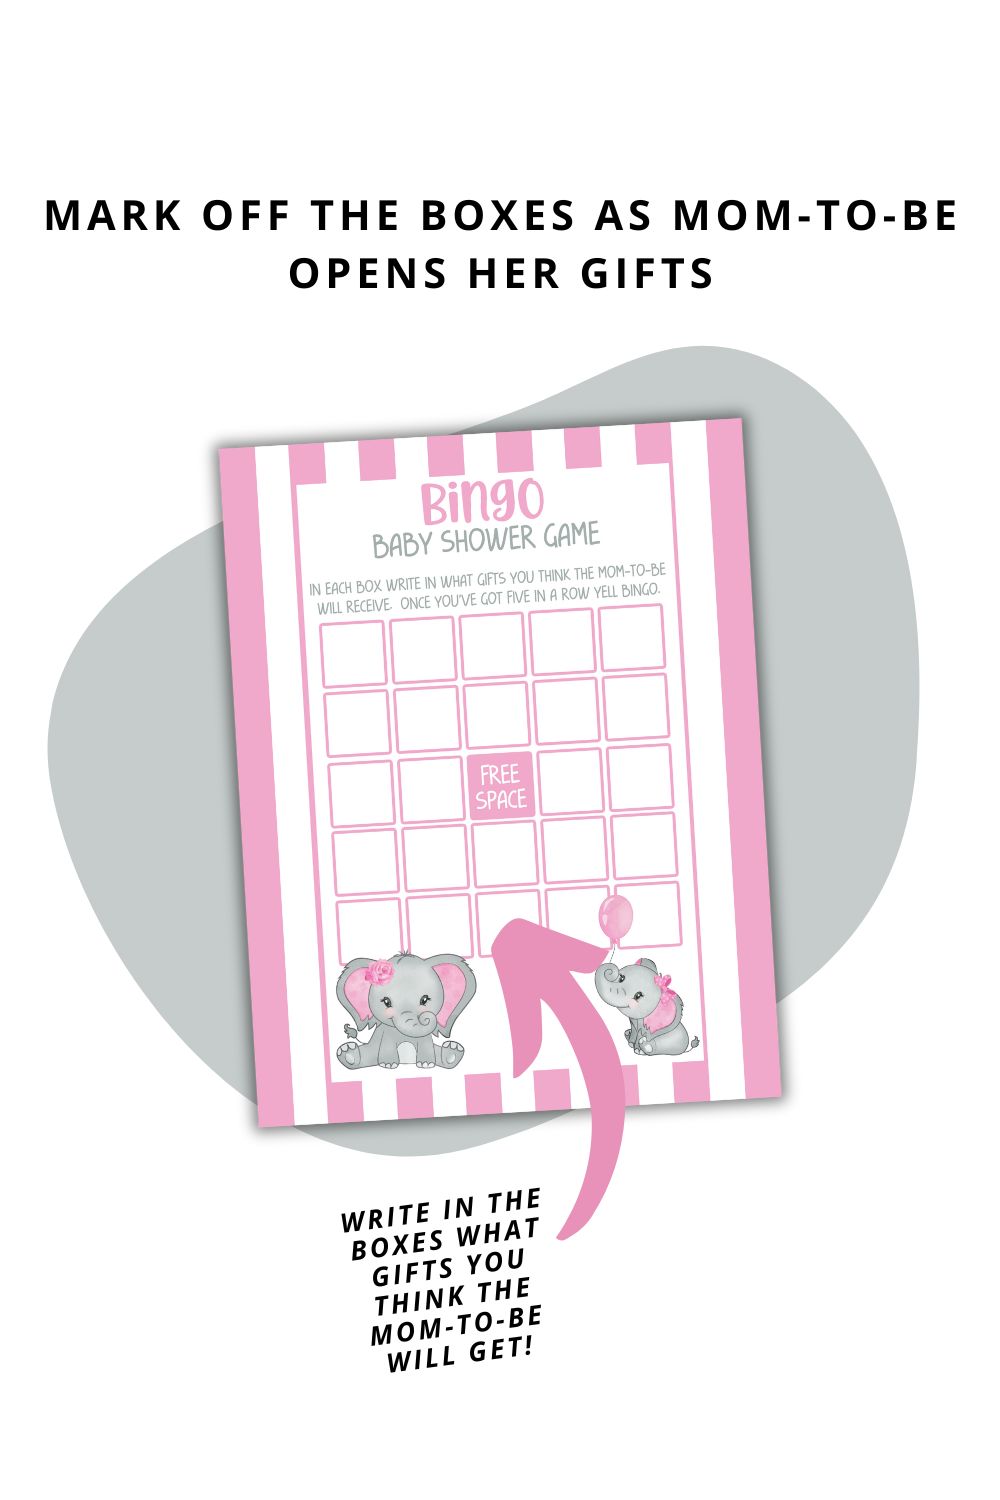 Printable Pink Elephant Baby Shower Bingo